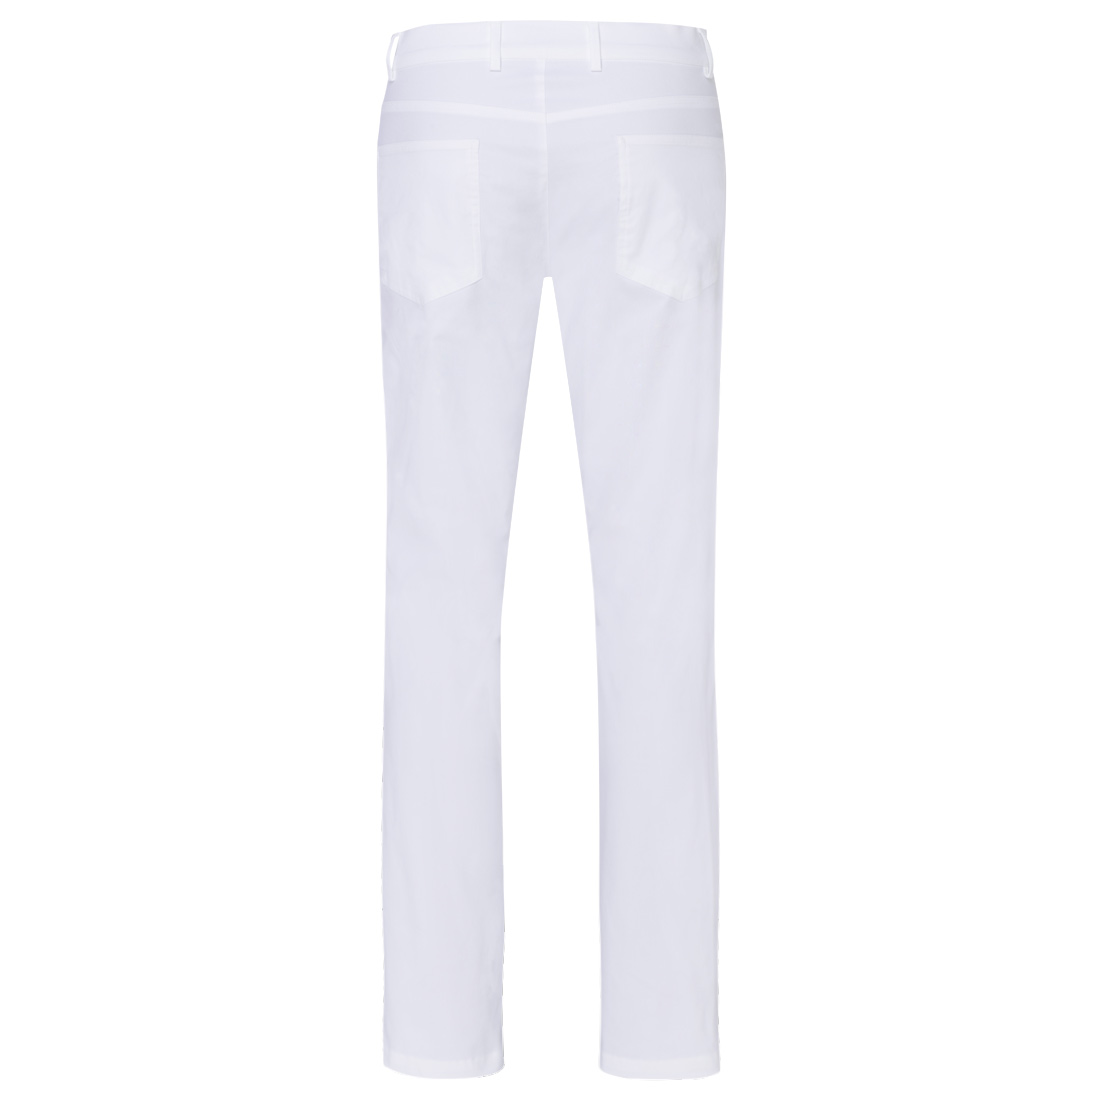 Pantalon de golf 5 poches stretch Performance en Slim Fit avec protection UV